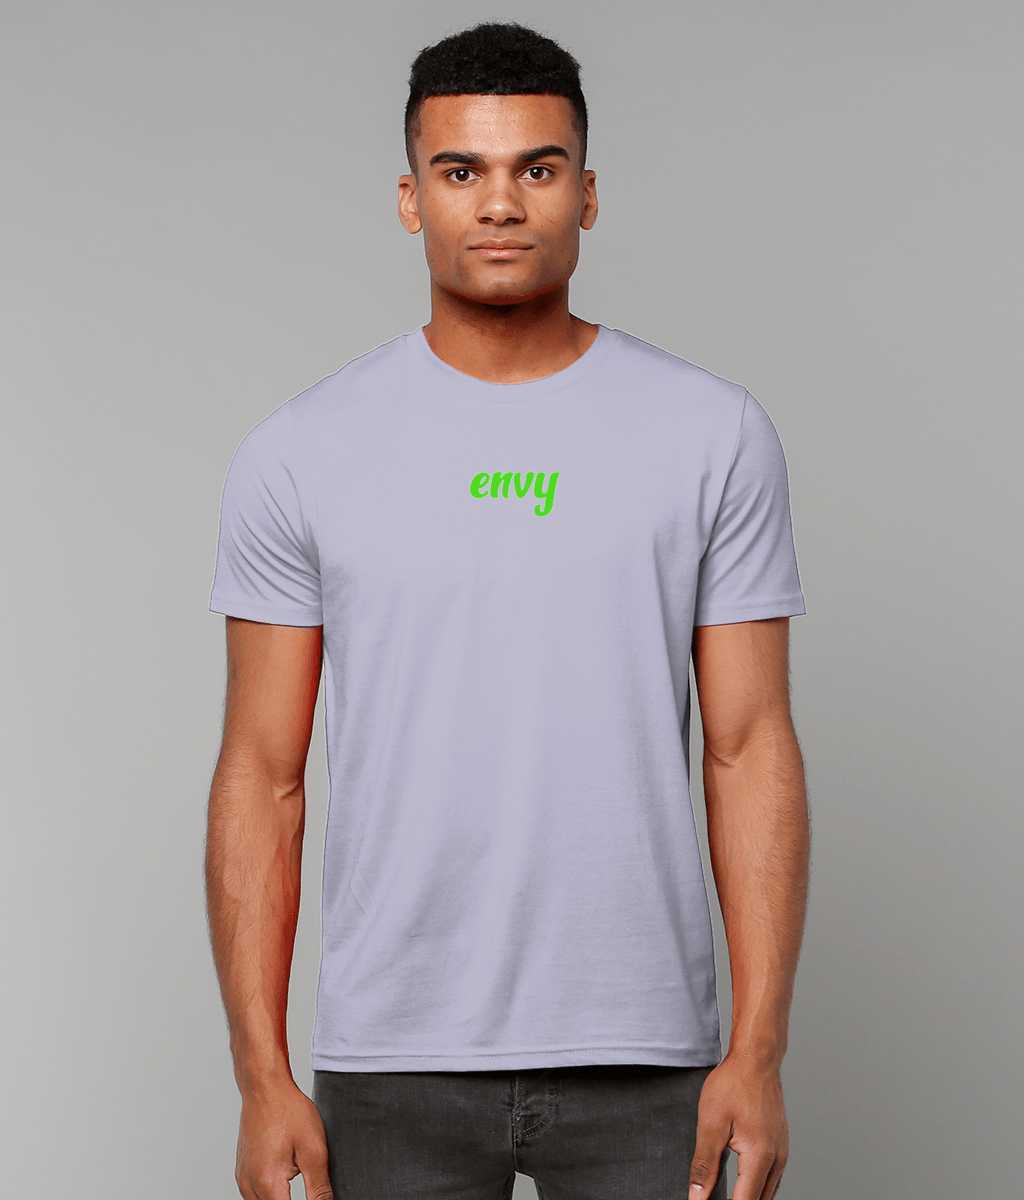 Envy non gender t-shirt Cherchez La Femme brand